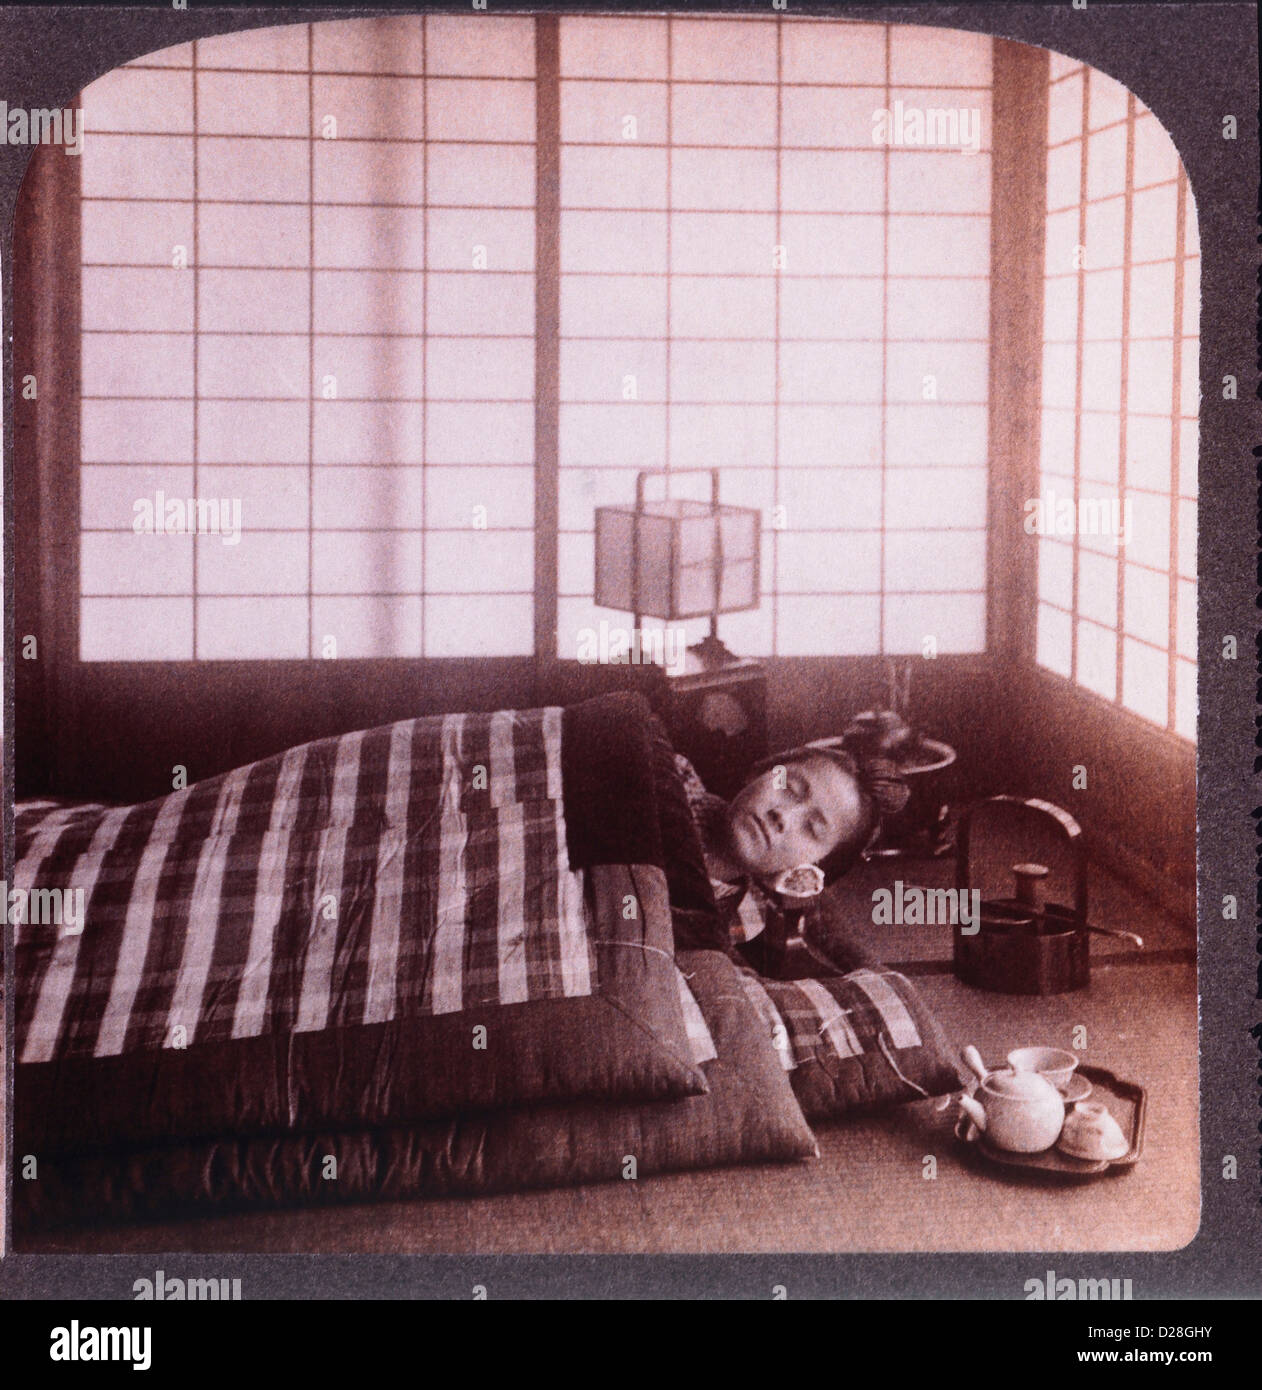 Junge Frau schläft zwischen Futons, Stereo-Fotografie, 1904 Stockfoto